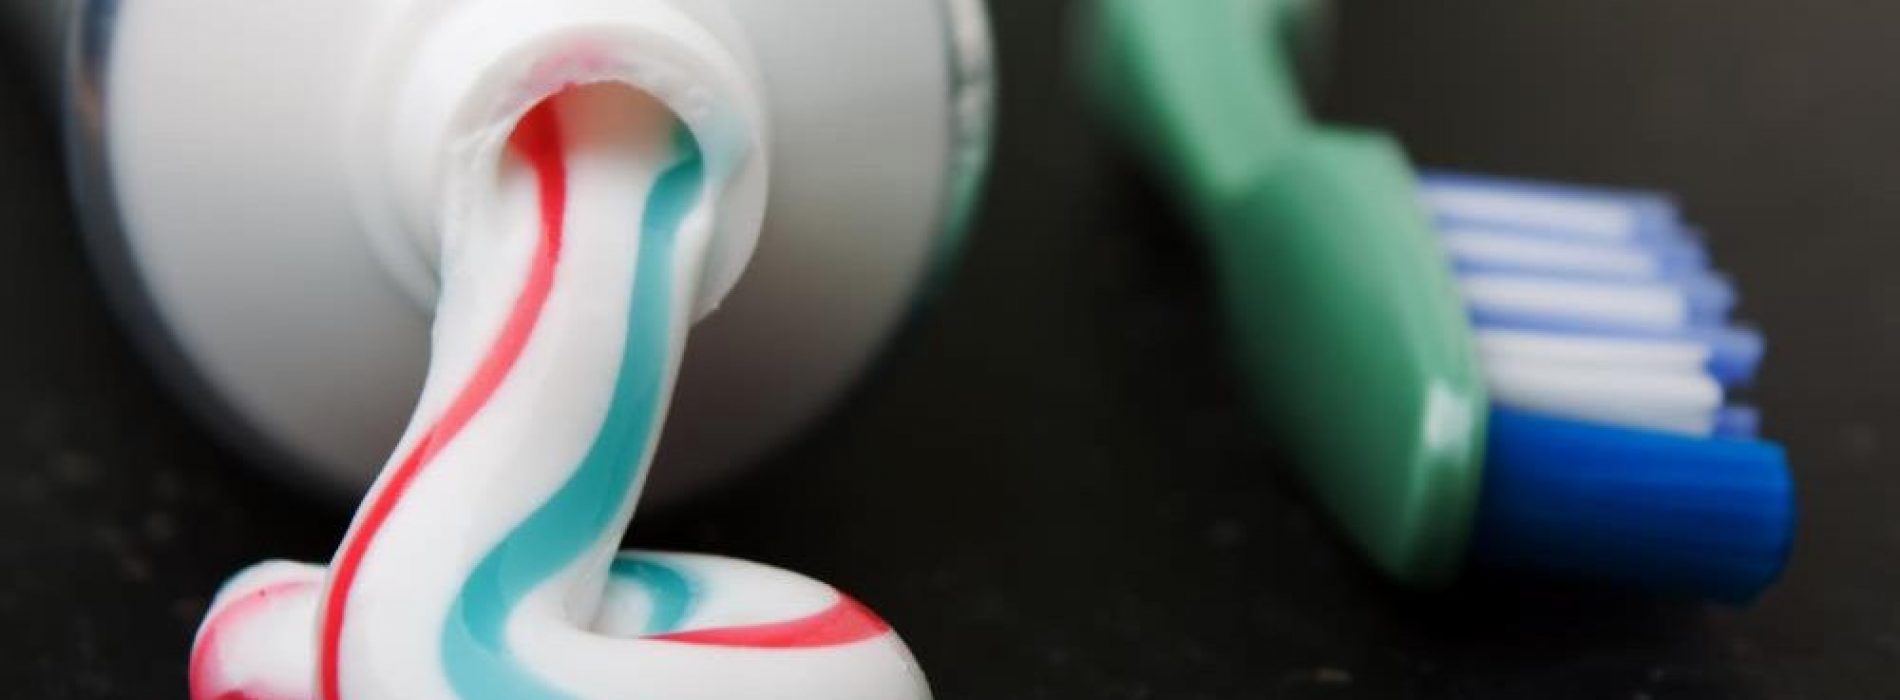 Vergiftig je jezelf met commerciële tandpasta?